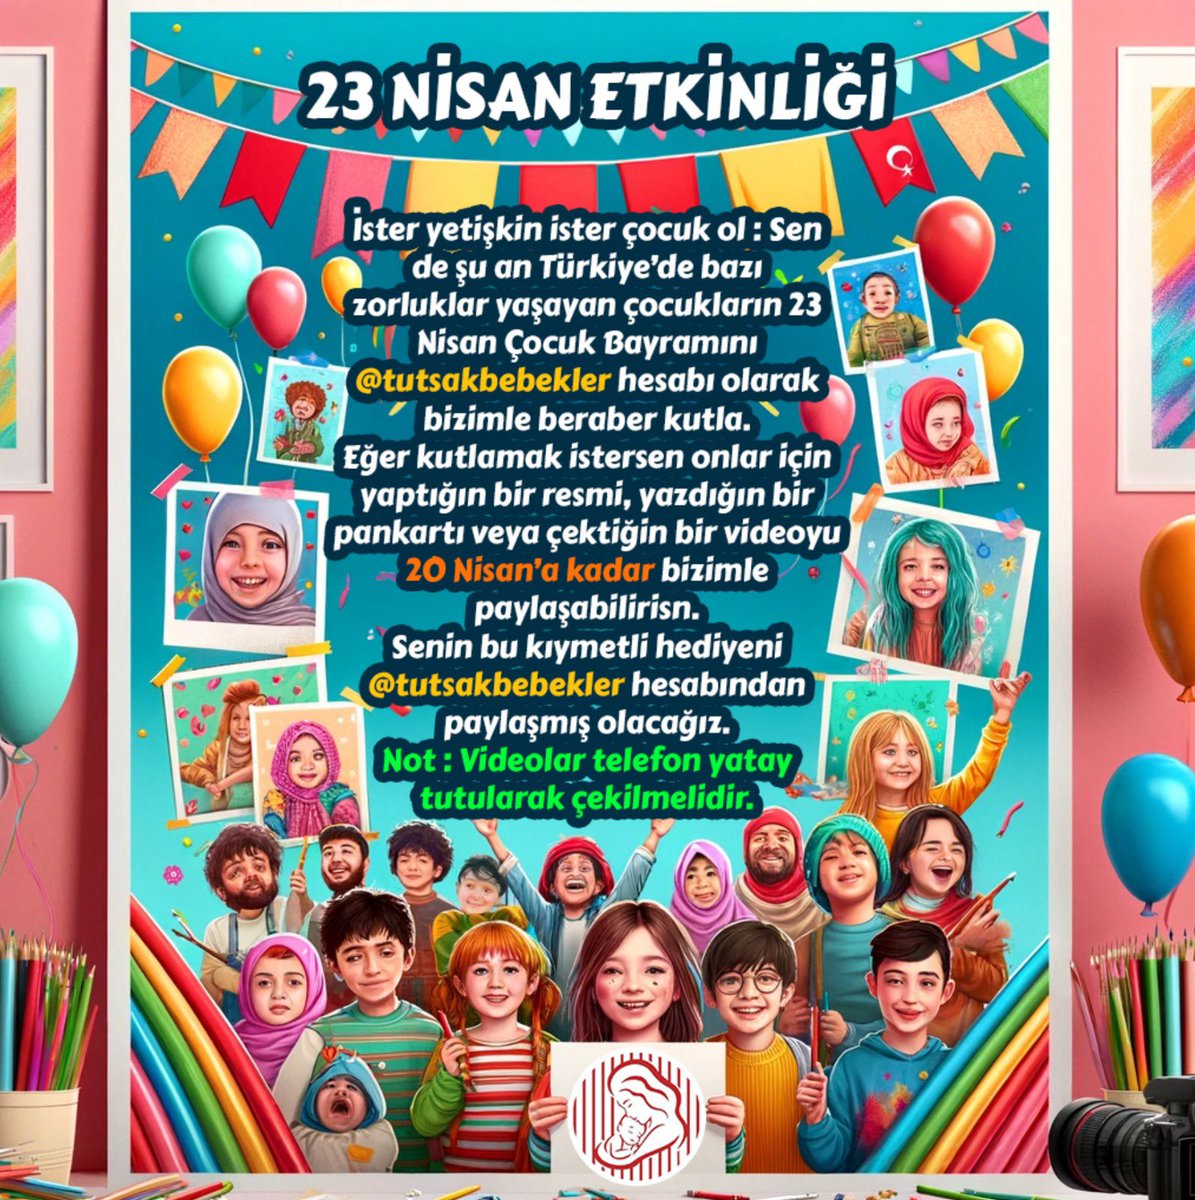 VAR MISINIZ?! İster yetişkin ister çocuk ol: Sen de Türkiye’de zorluklar yaşayan çocukların 23 Nisan Çocuk Bayramını @TutsakBebekler hesabı olarak bizimle beraber kutla. Onlar için yaptığın bir resmi, yazdığın bir pankartı veya çektiğin bir videoyu 2O Nisan'a kadar bizimle…